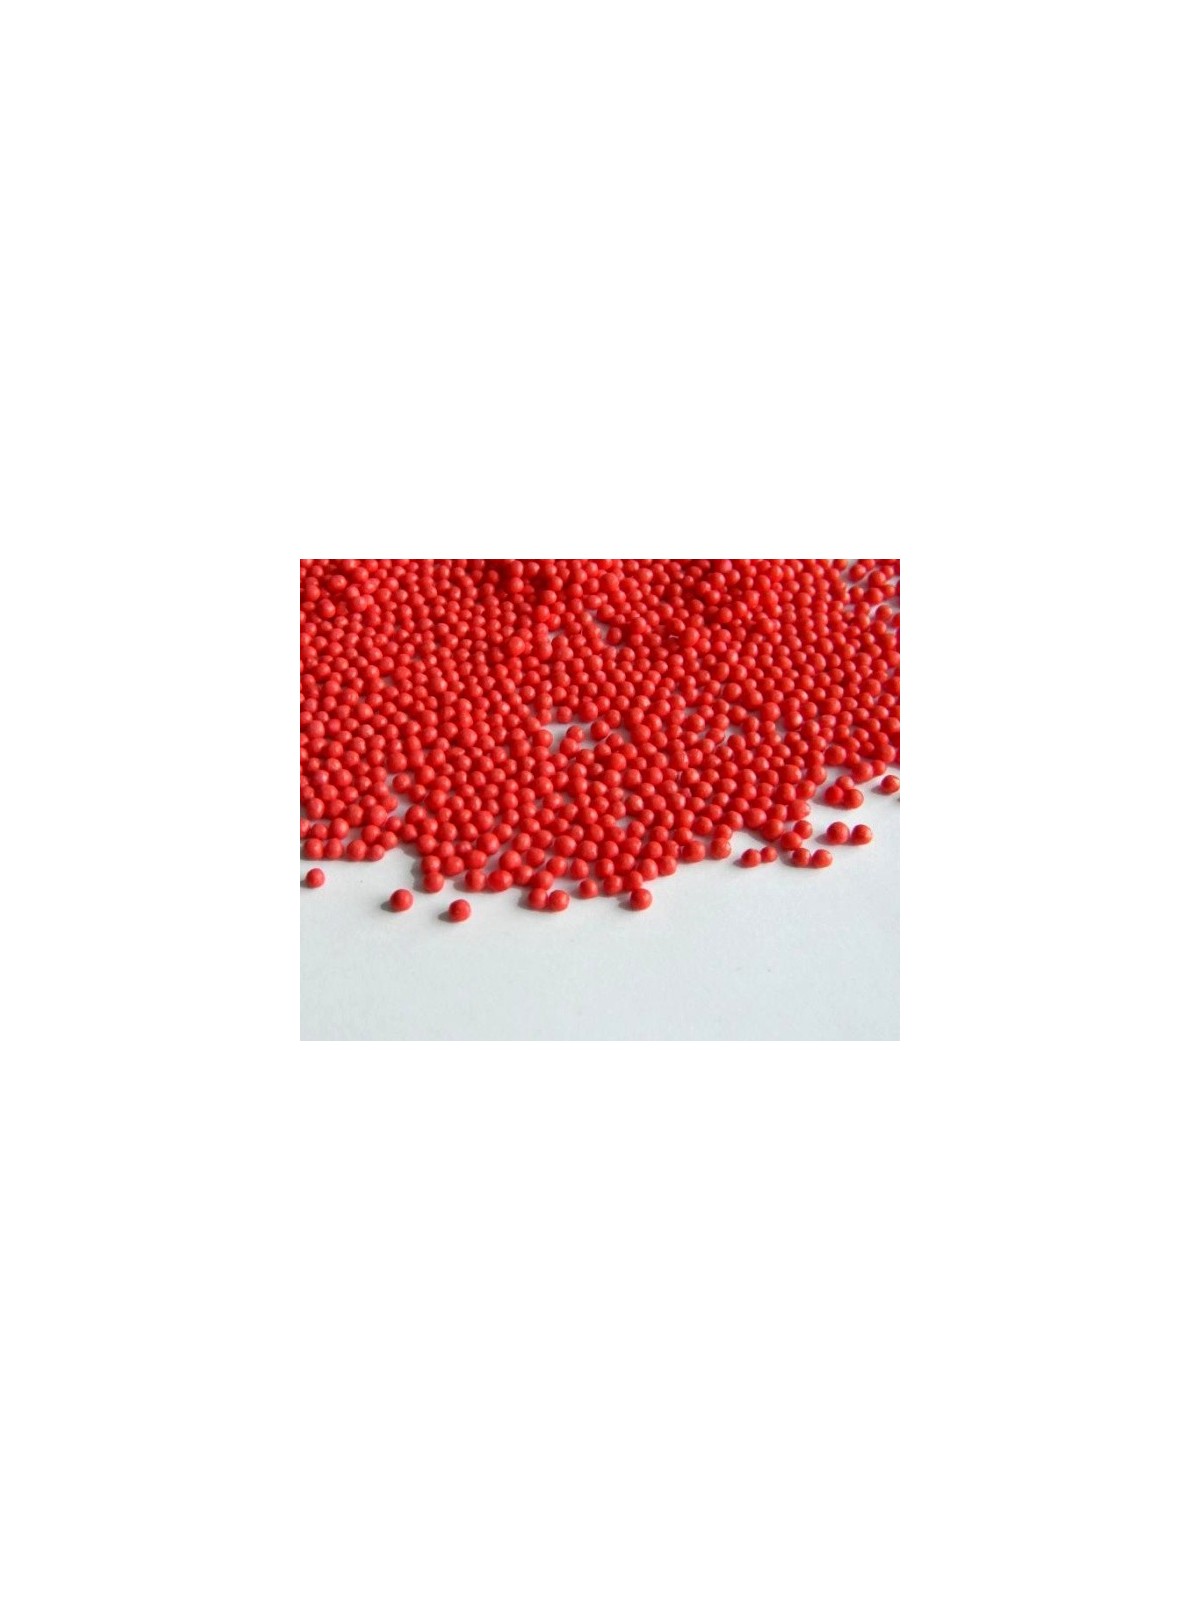 Cukrovej perličky máčik červený - 100g